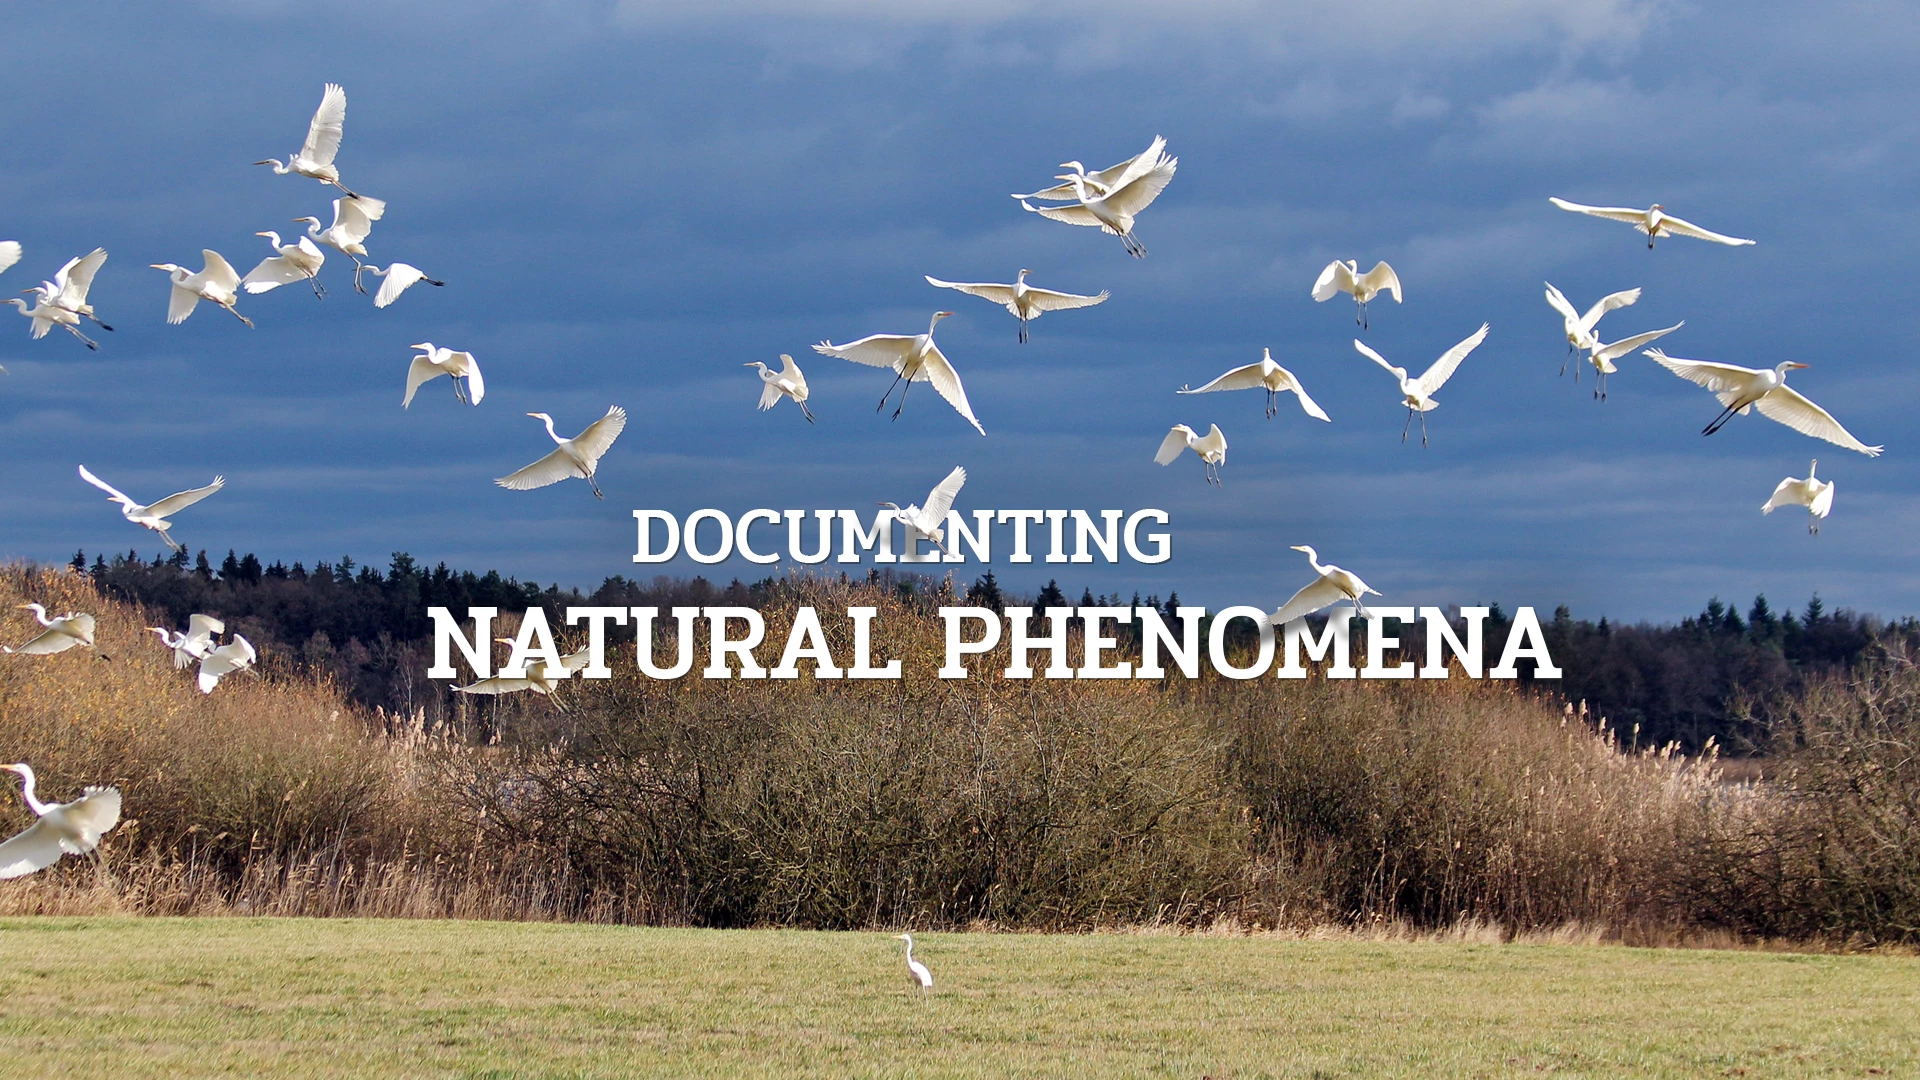 Documenting natural phenomena